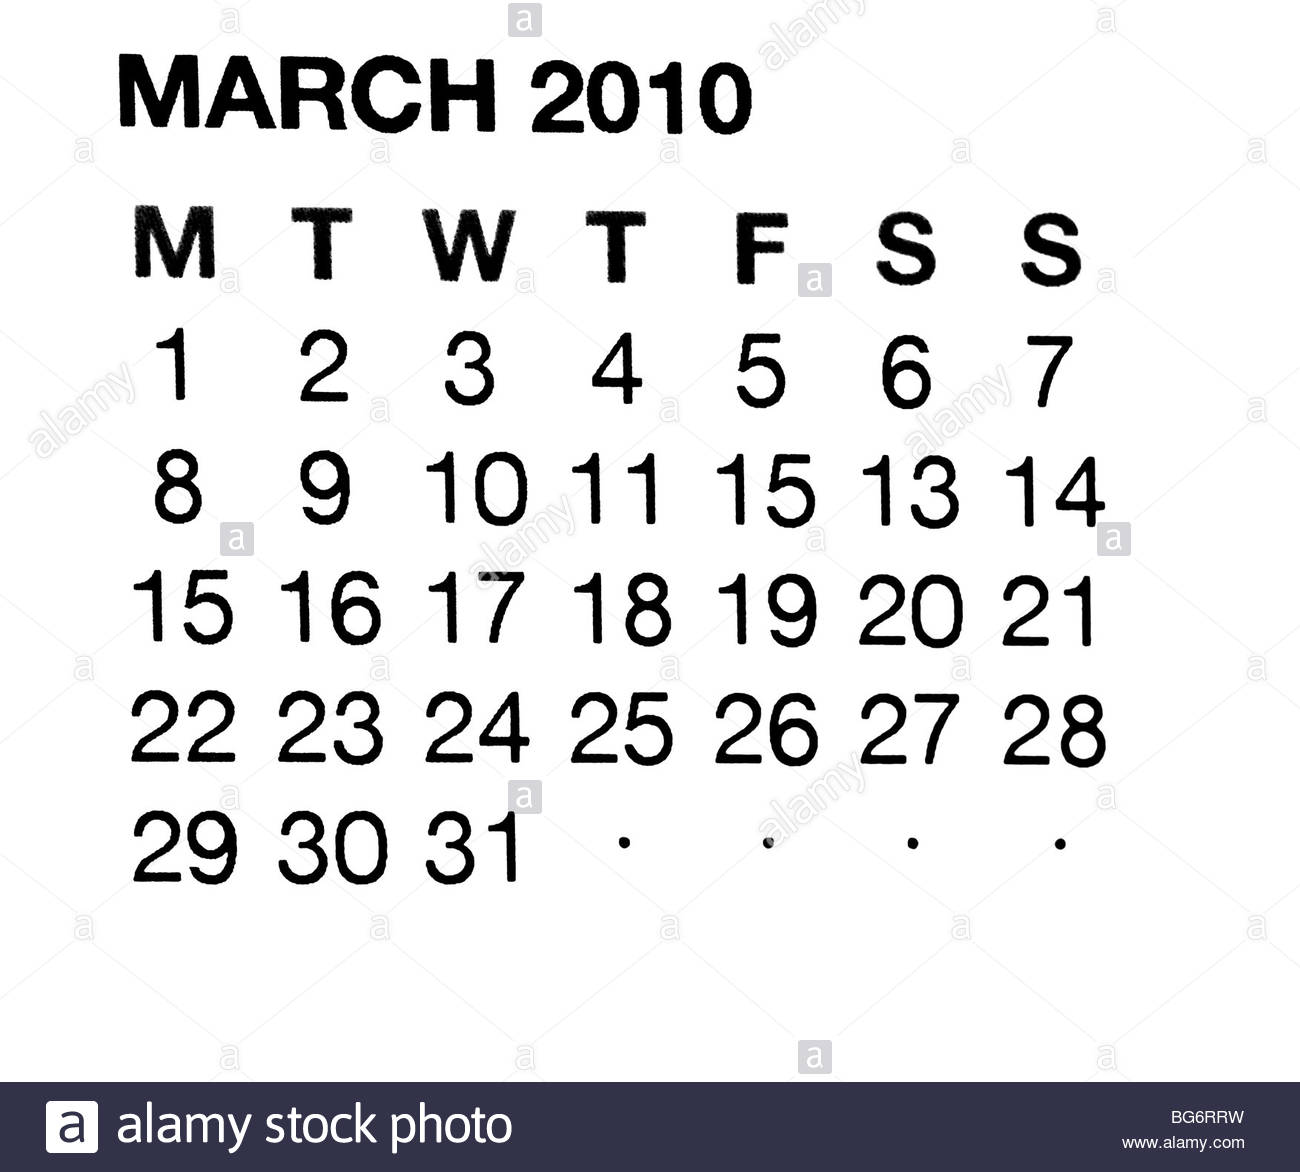 March 2010 calendar Stock Photo